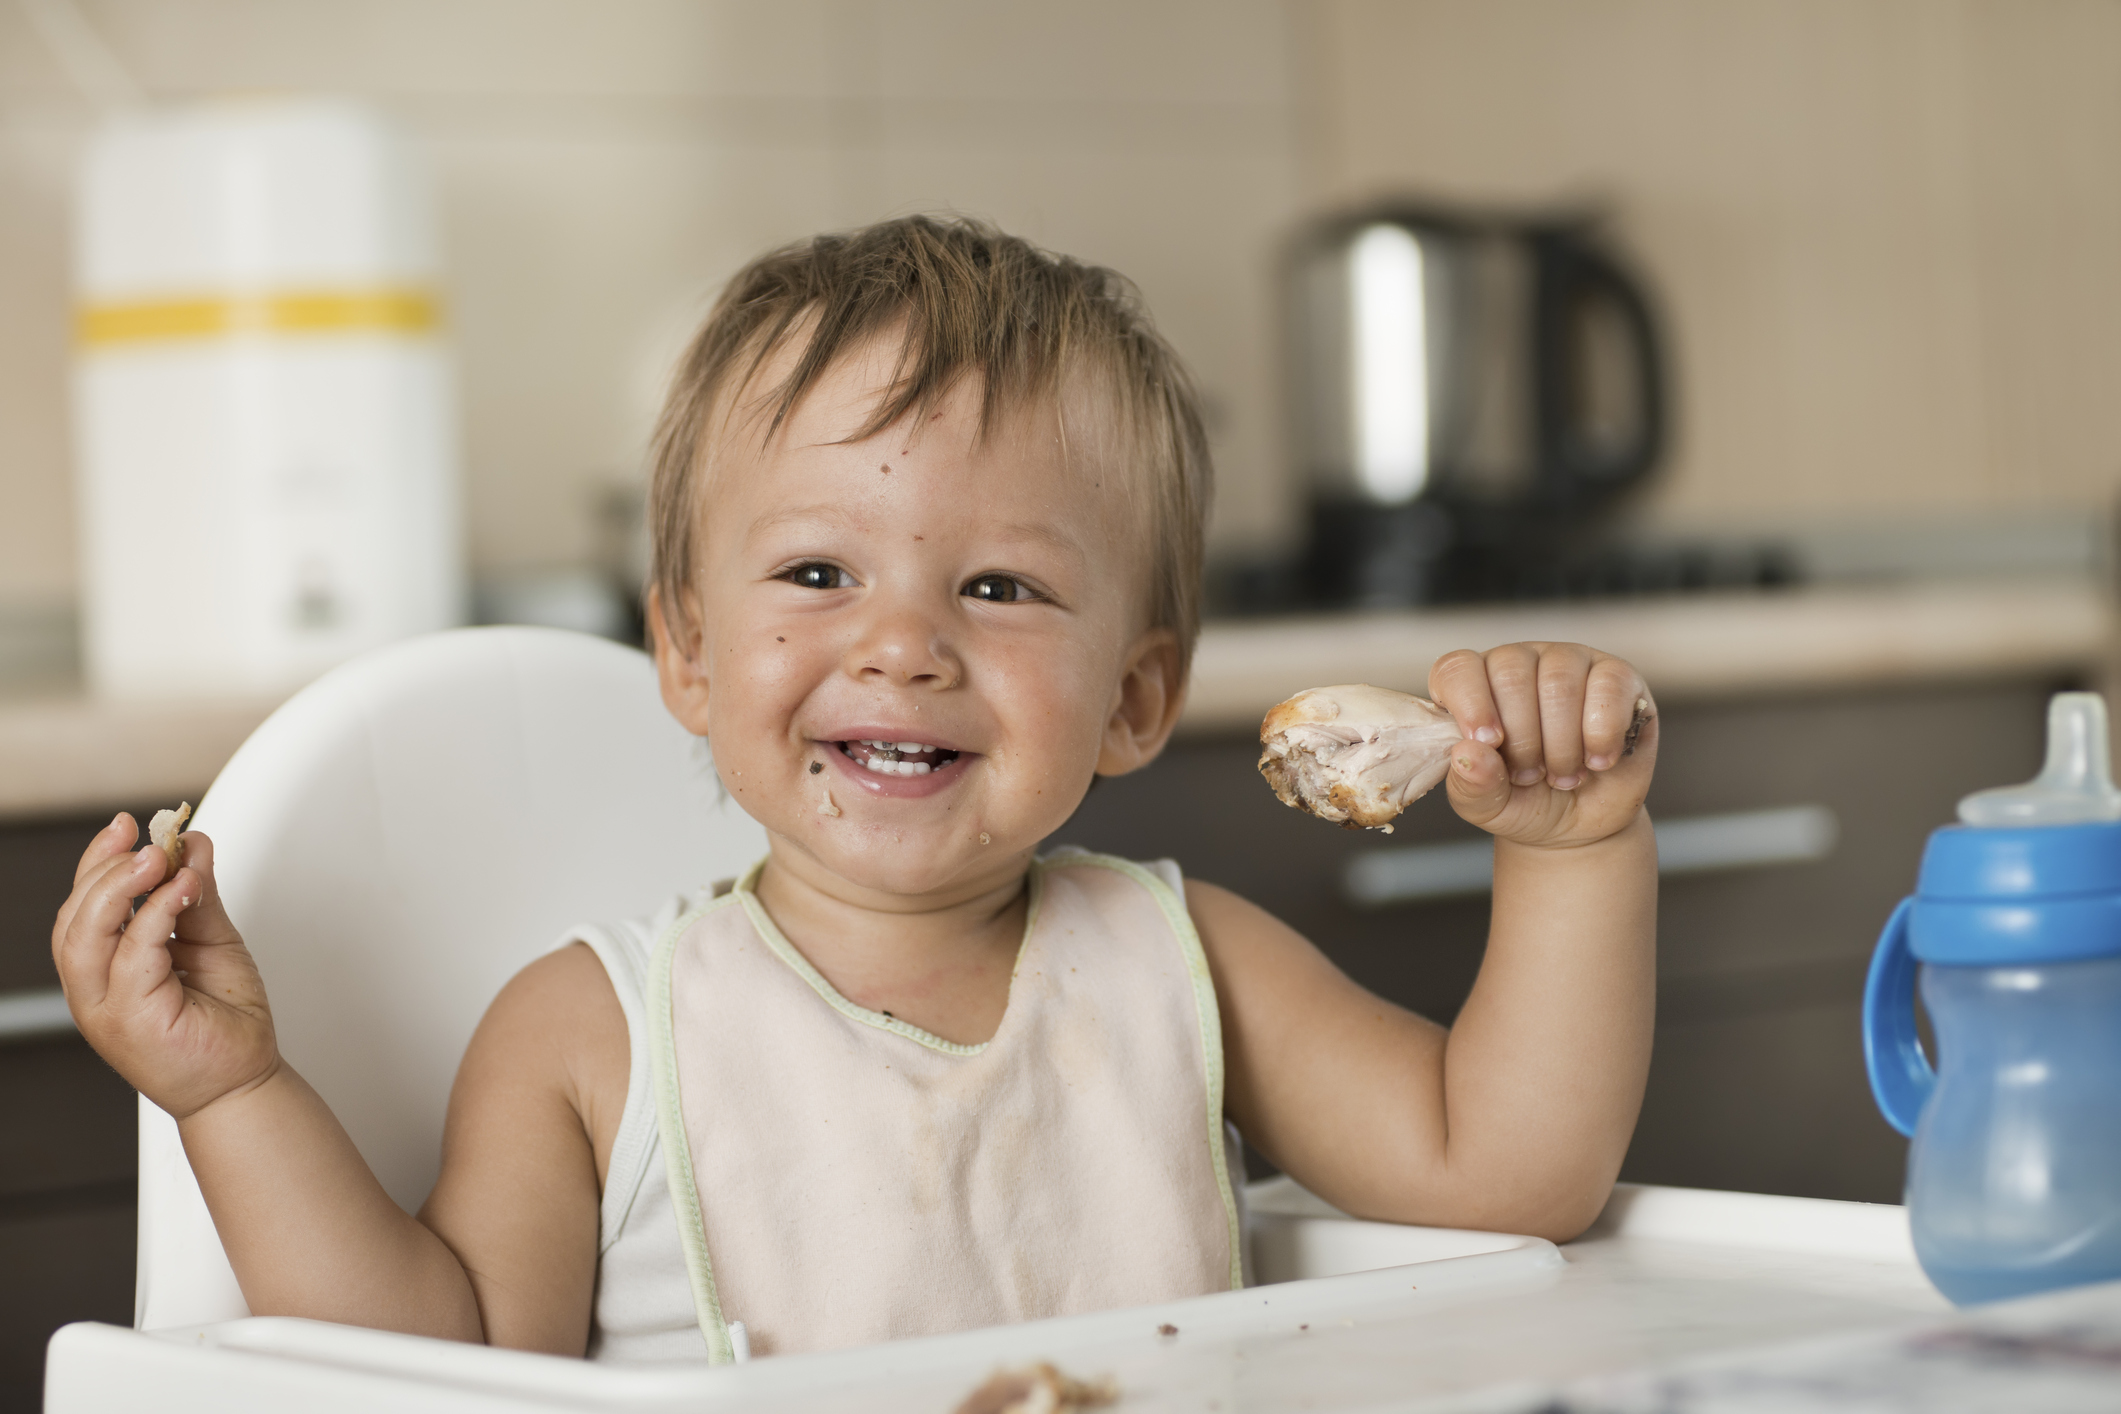 Des produits infantiles Modilac rappelés après des cas de Salmonelle chez  des nourrissons